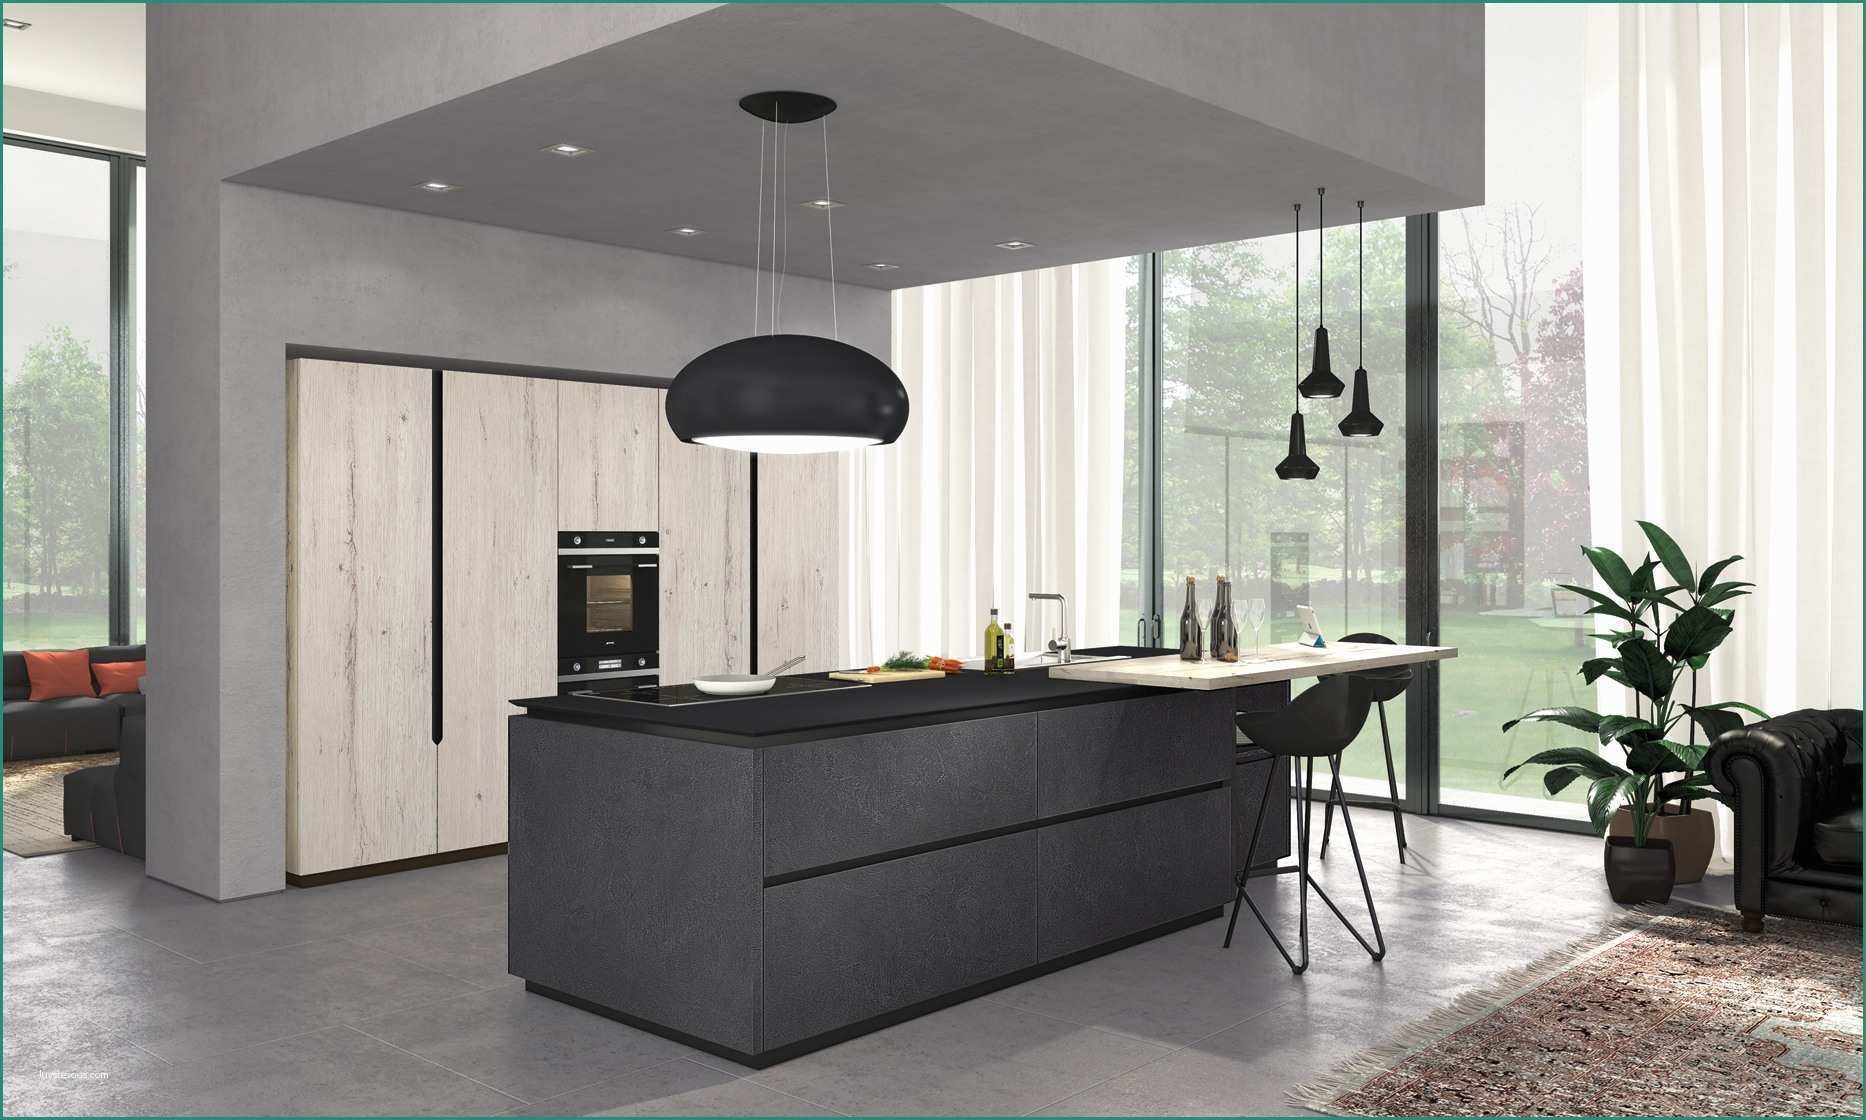 Cucine Lube Prezzi E Opinioni E Piani Cucina Materiali Idee Di Design Per La Casa Rustify